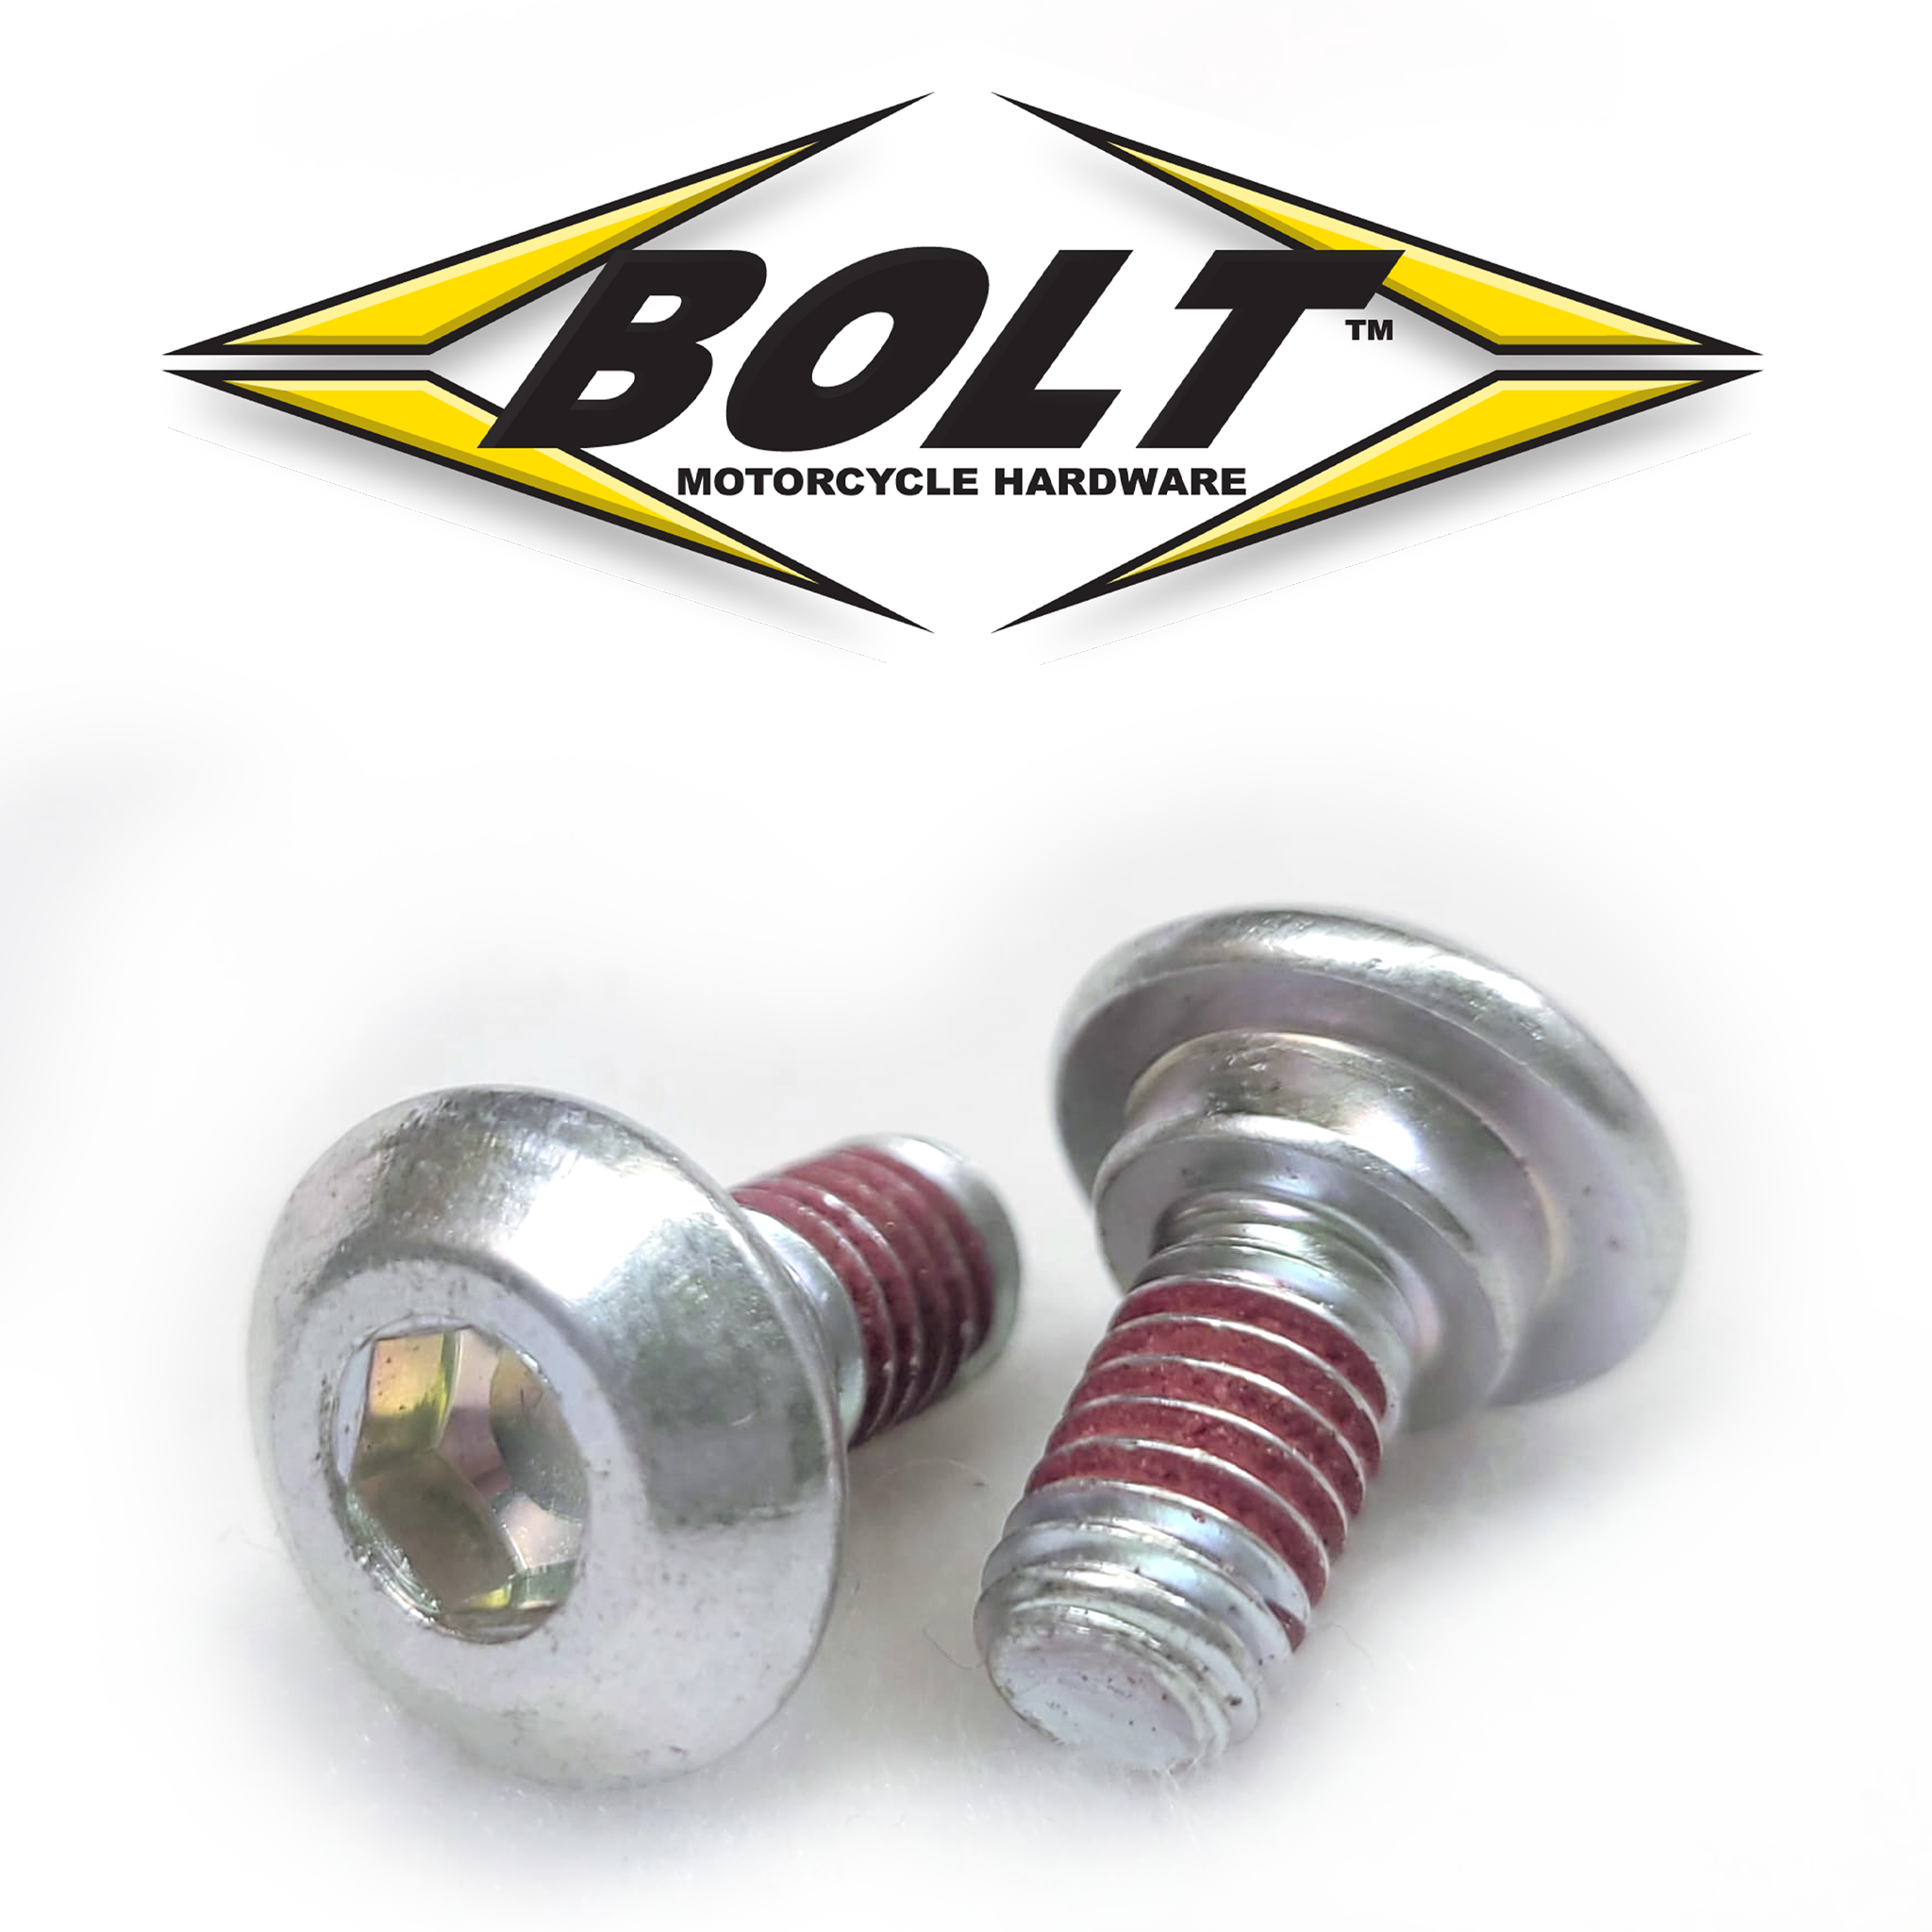 M6 rotor bolt and Master cylinder bolt for Kawasaki 92151-1799 